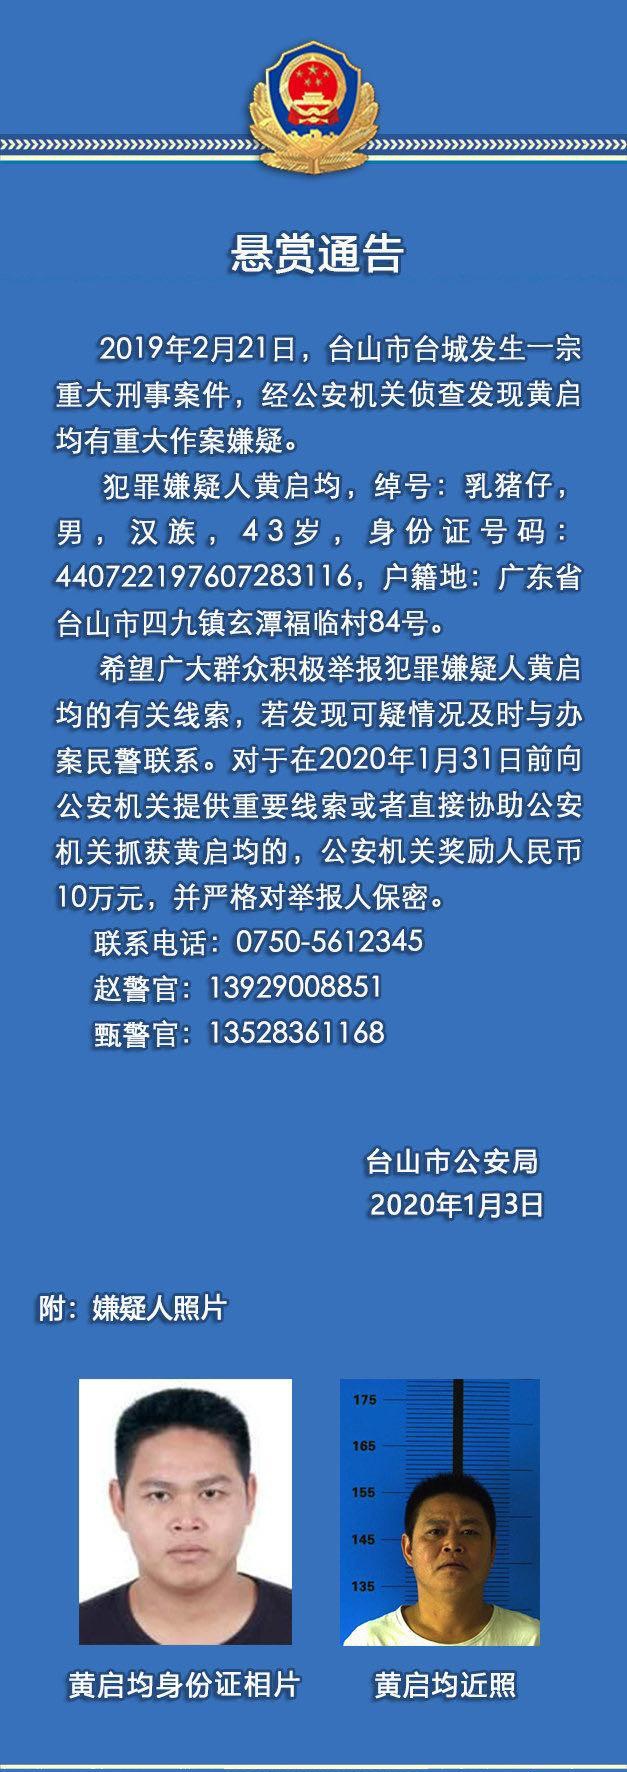 广东43岁男子涉重大刑事案件 警方悬赏10万元缉捕